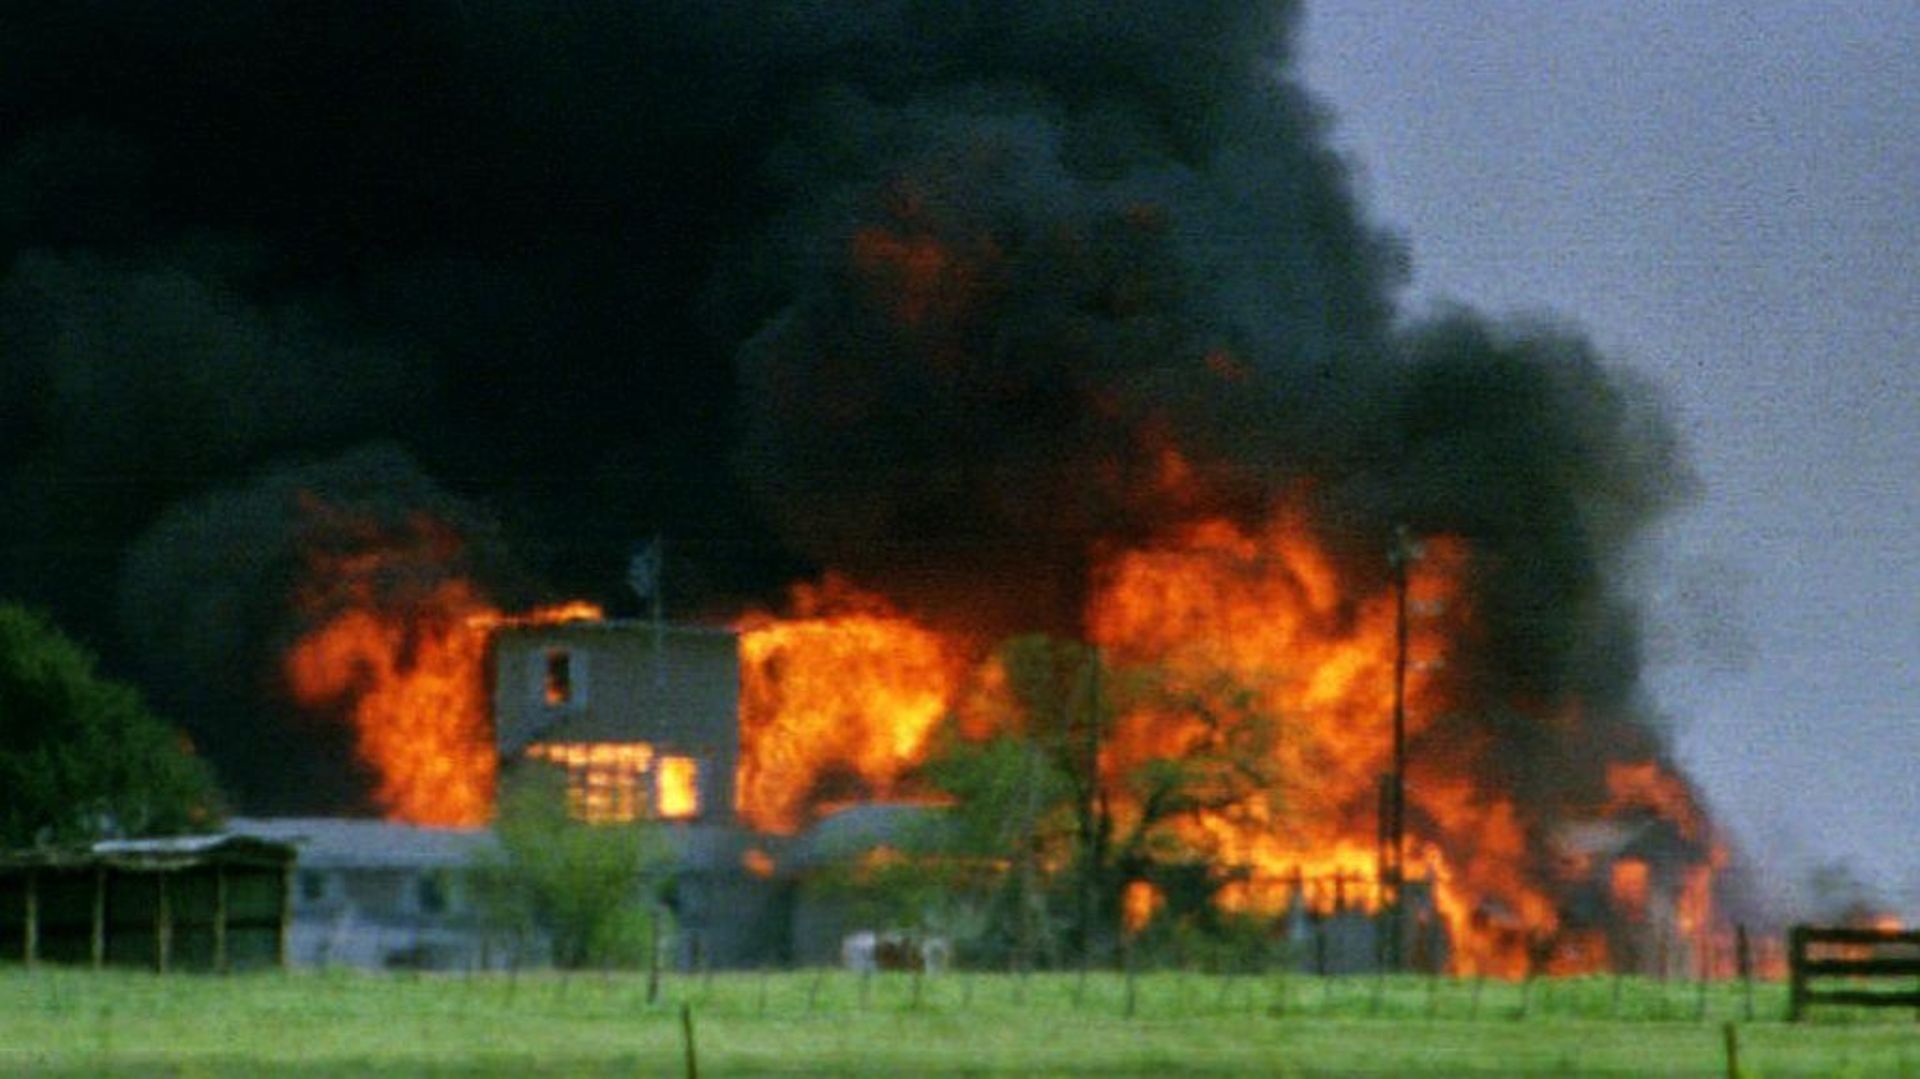 L'incendie de la ferme des Davidiens à Waco en 1993